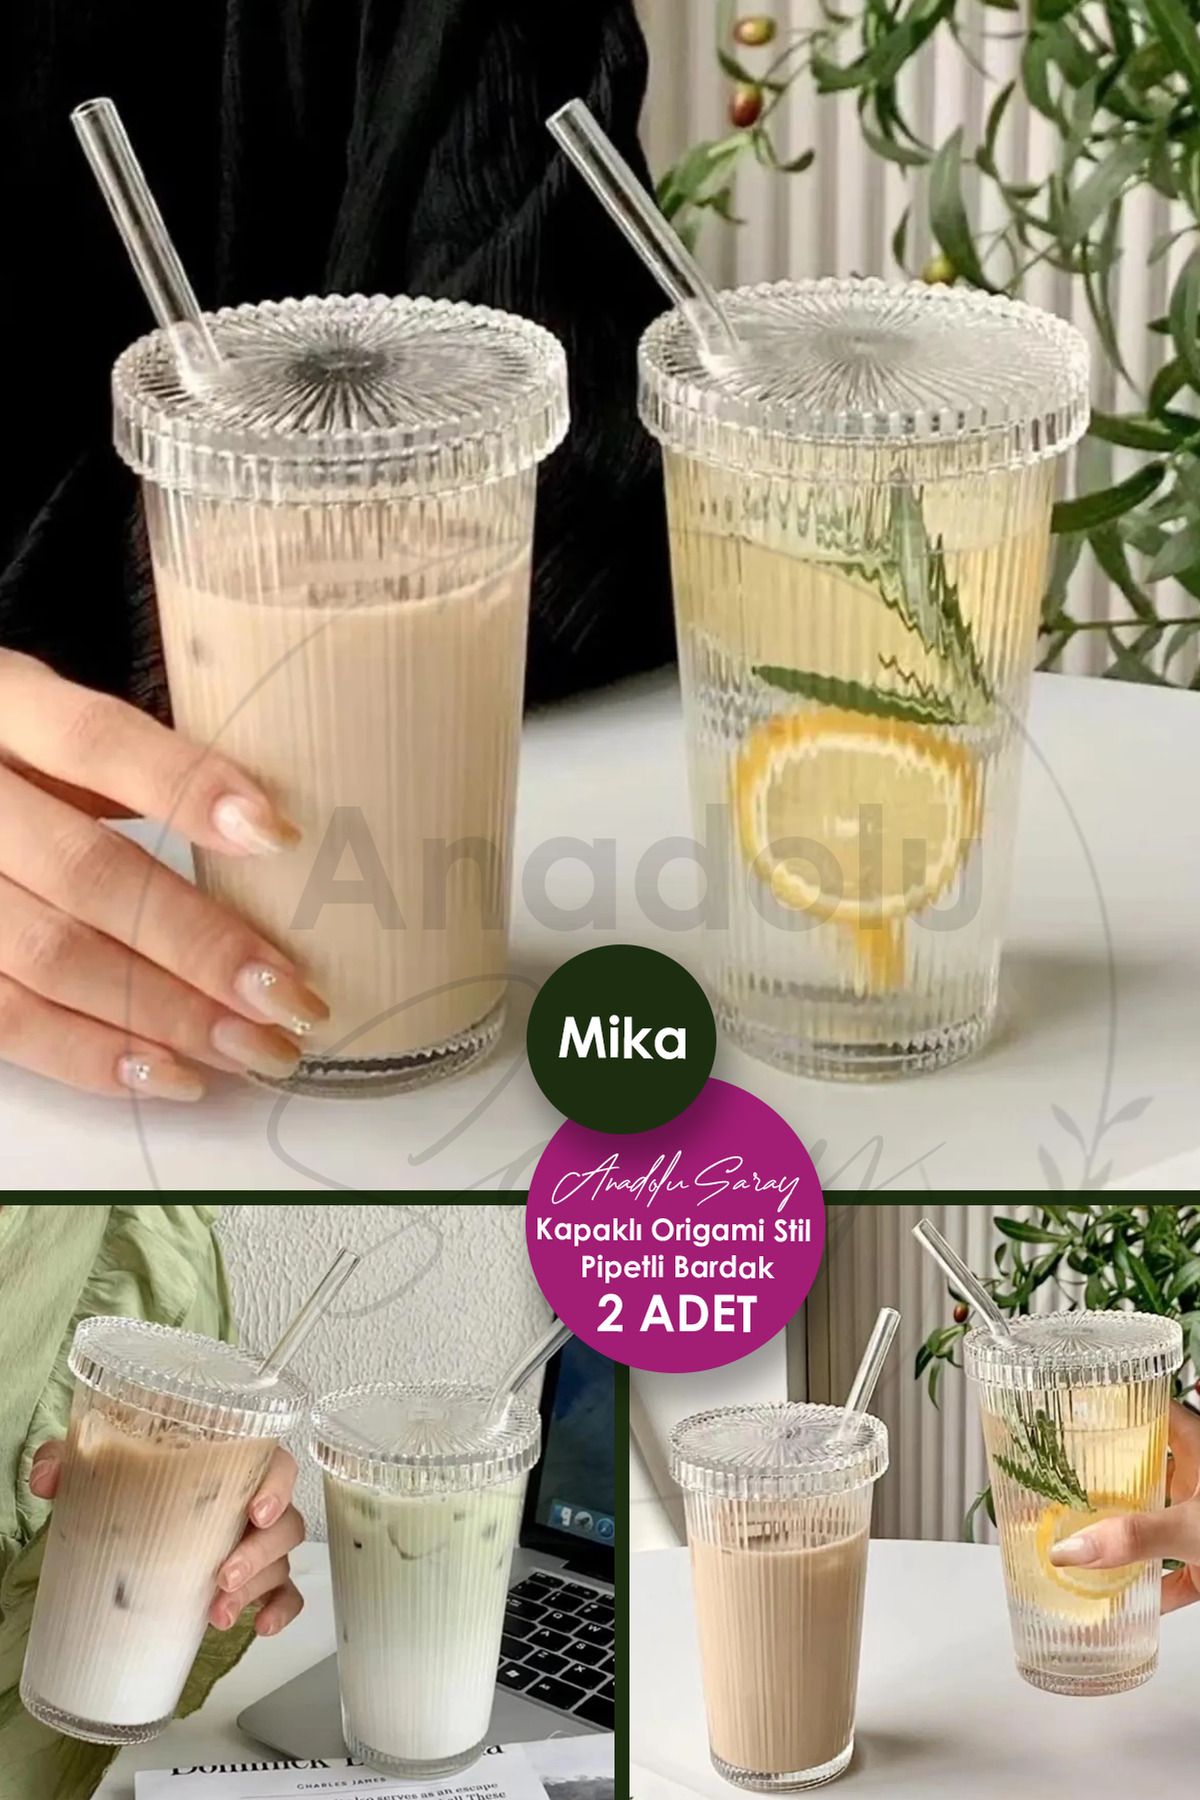 Anadolu Saray 2 Adet Mika (Cam Değildir) Kapaklı Pipetli Origami Stil Bardak Soğuk Kahve Meşrubat Bardağı